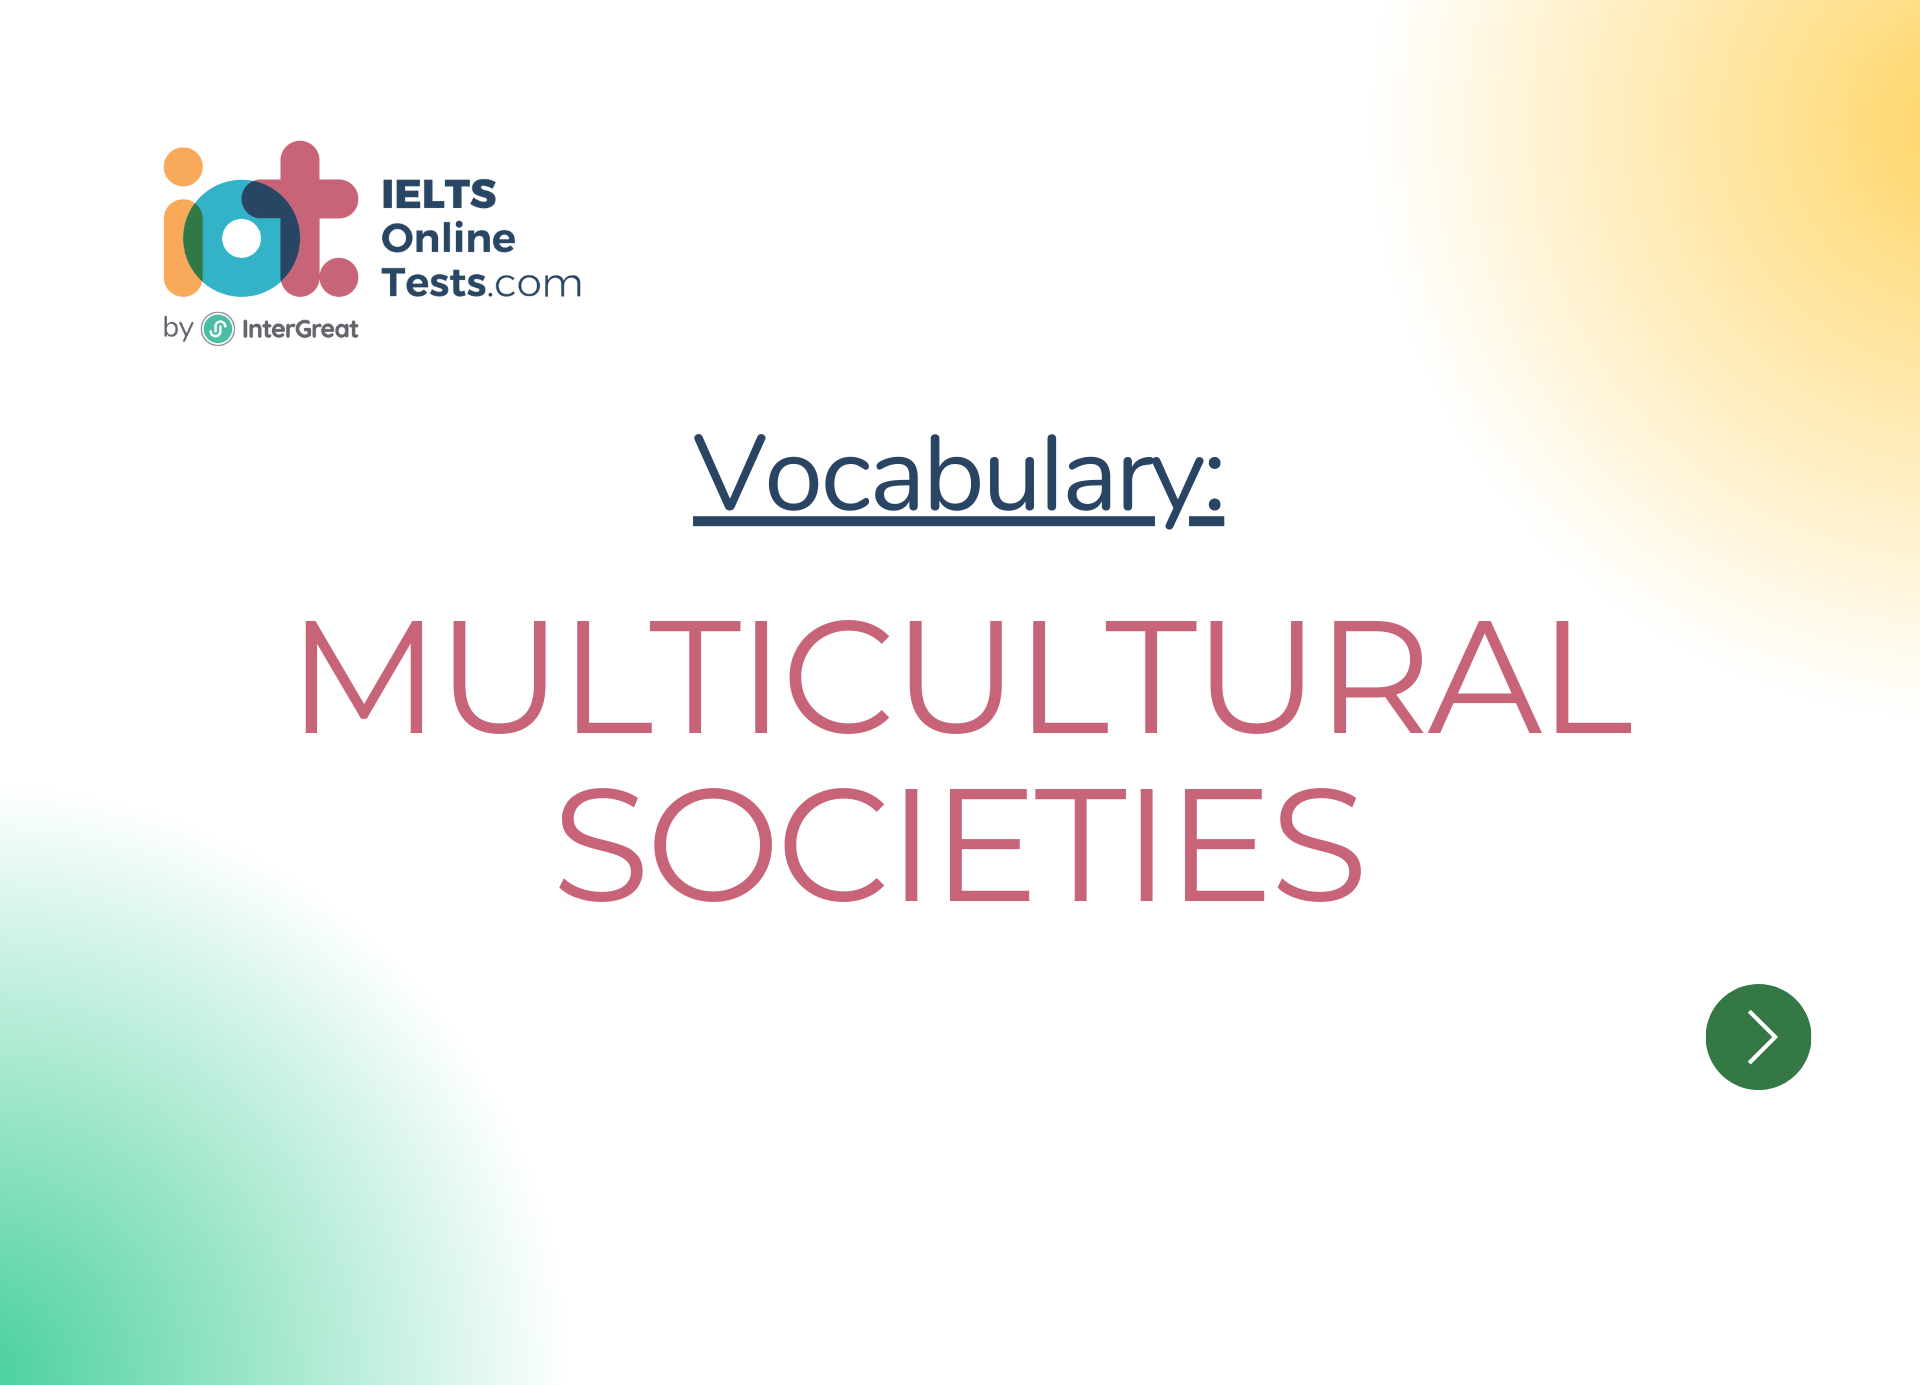 Xã hội đa văn hóa (Multicultural societies)